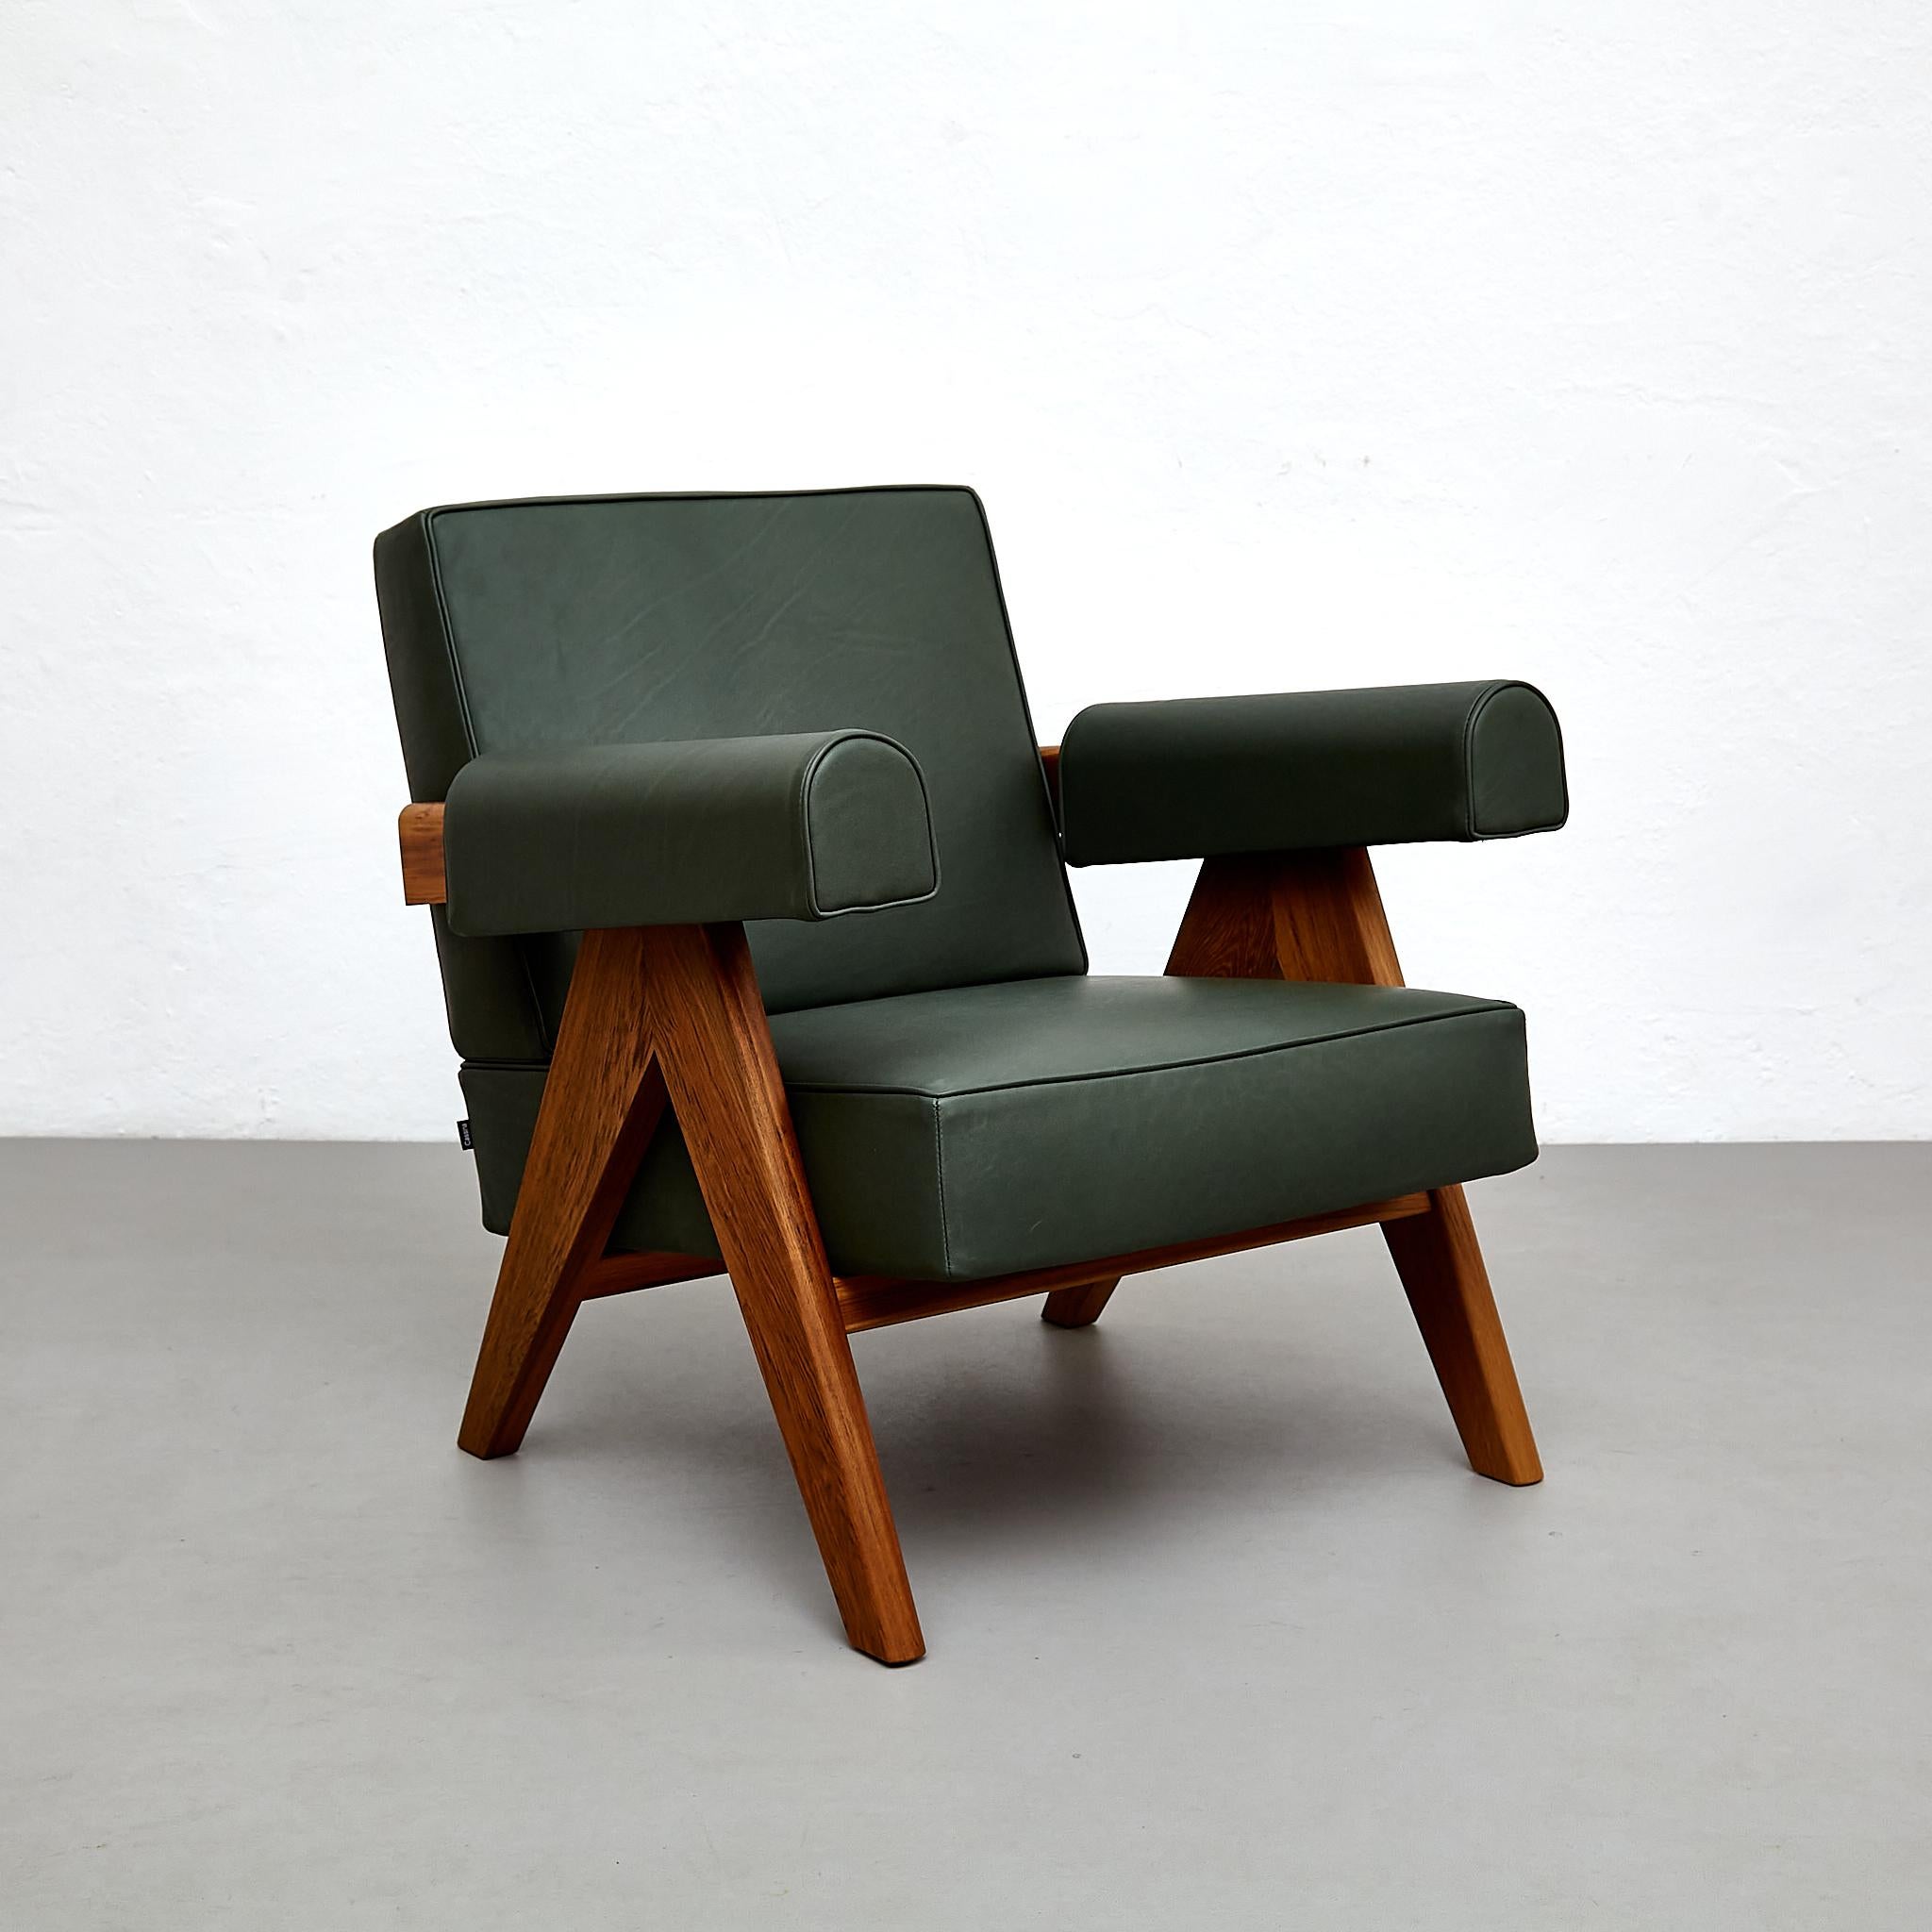 Faites l'expérience d'une élégance intemporelle et d'un savoir-faire exceptionnel avec le fauteuil Pierre Jeanneret, conçu à l'origine vers 1950 et relancé en 2019. Fabriquée par Cassina en Italie, cette pièce emblématique présente un mélange